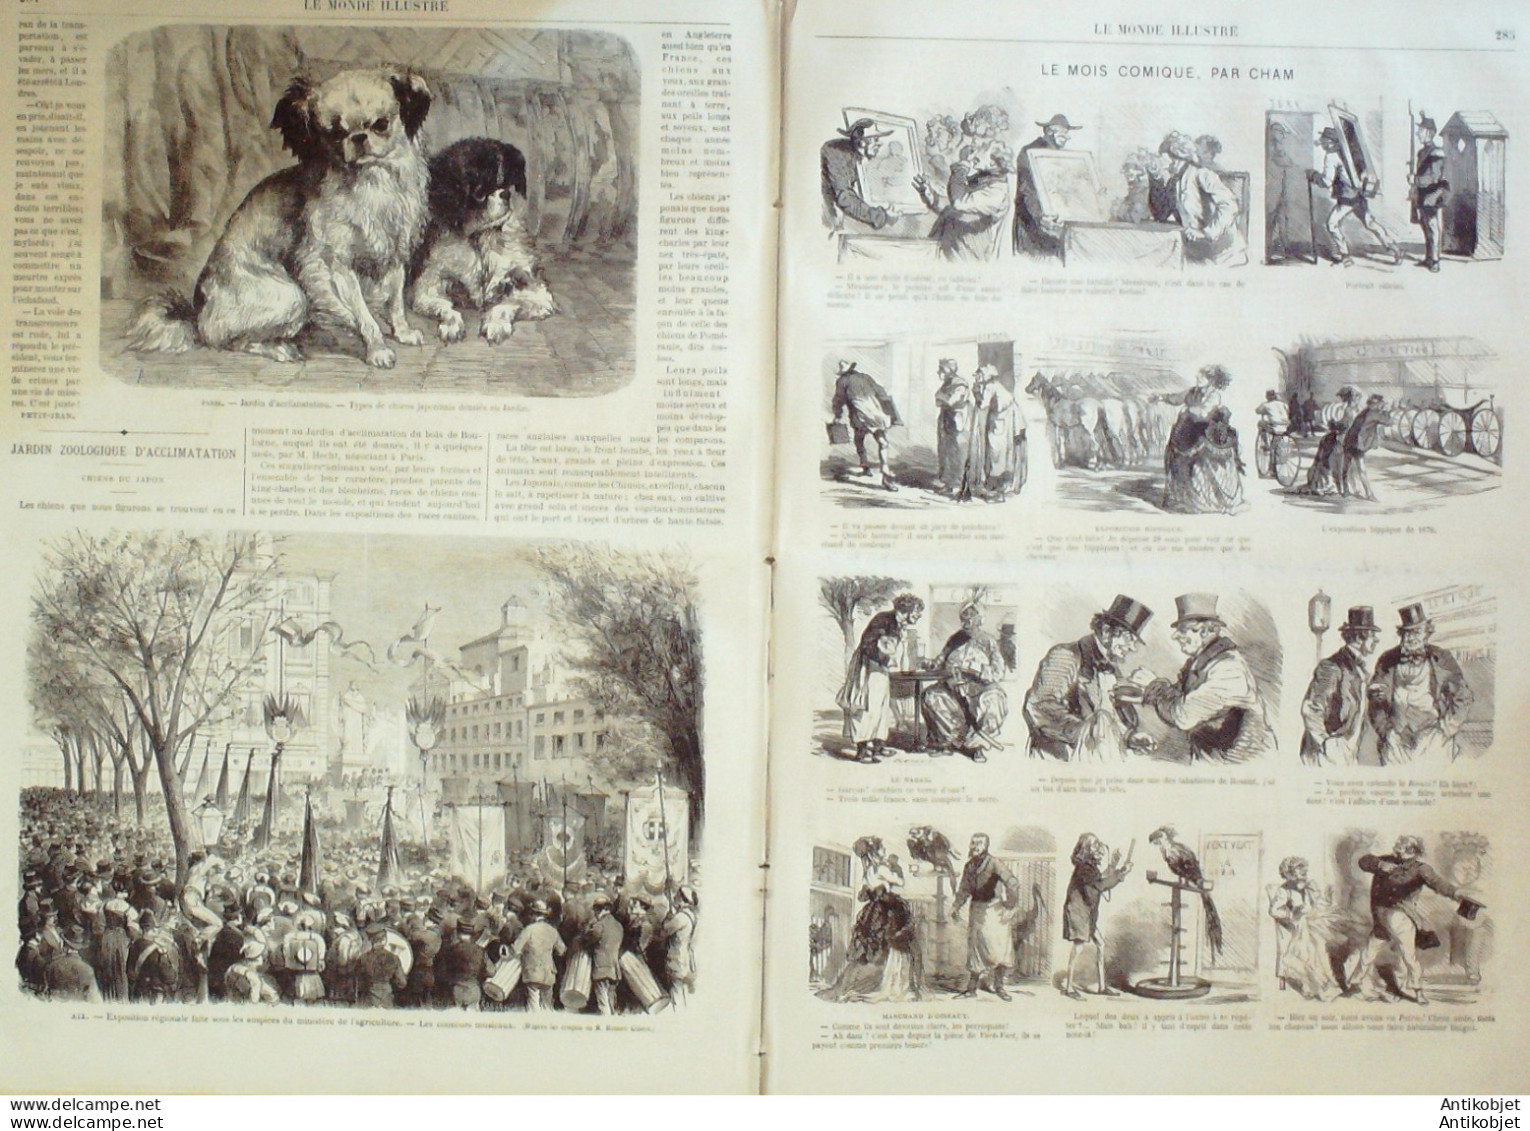 Le Monde Illustré 1869 N°629 St-Maur (94) Belgique Borinage Ais-en-Provence (13) - 1850 - 1899